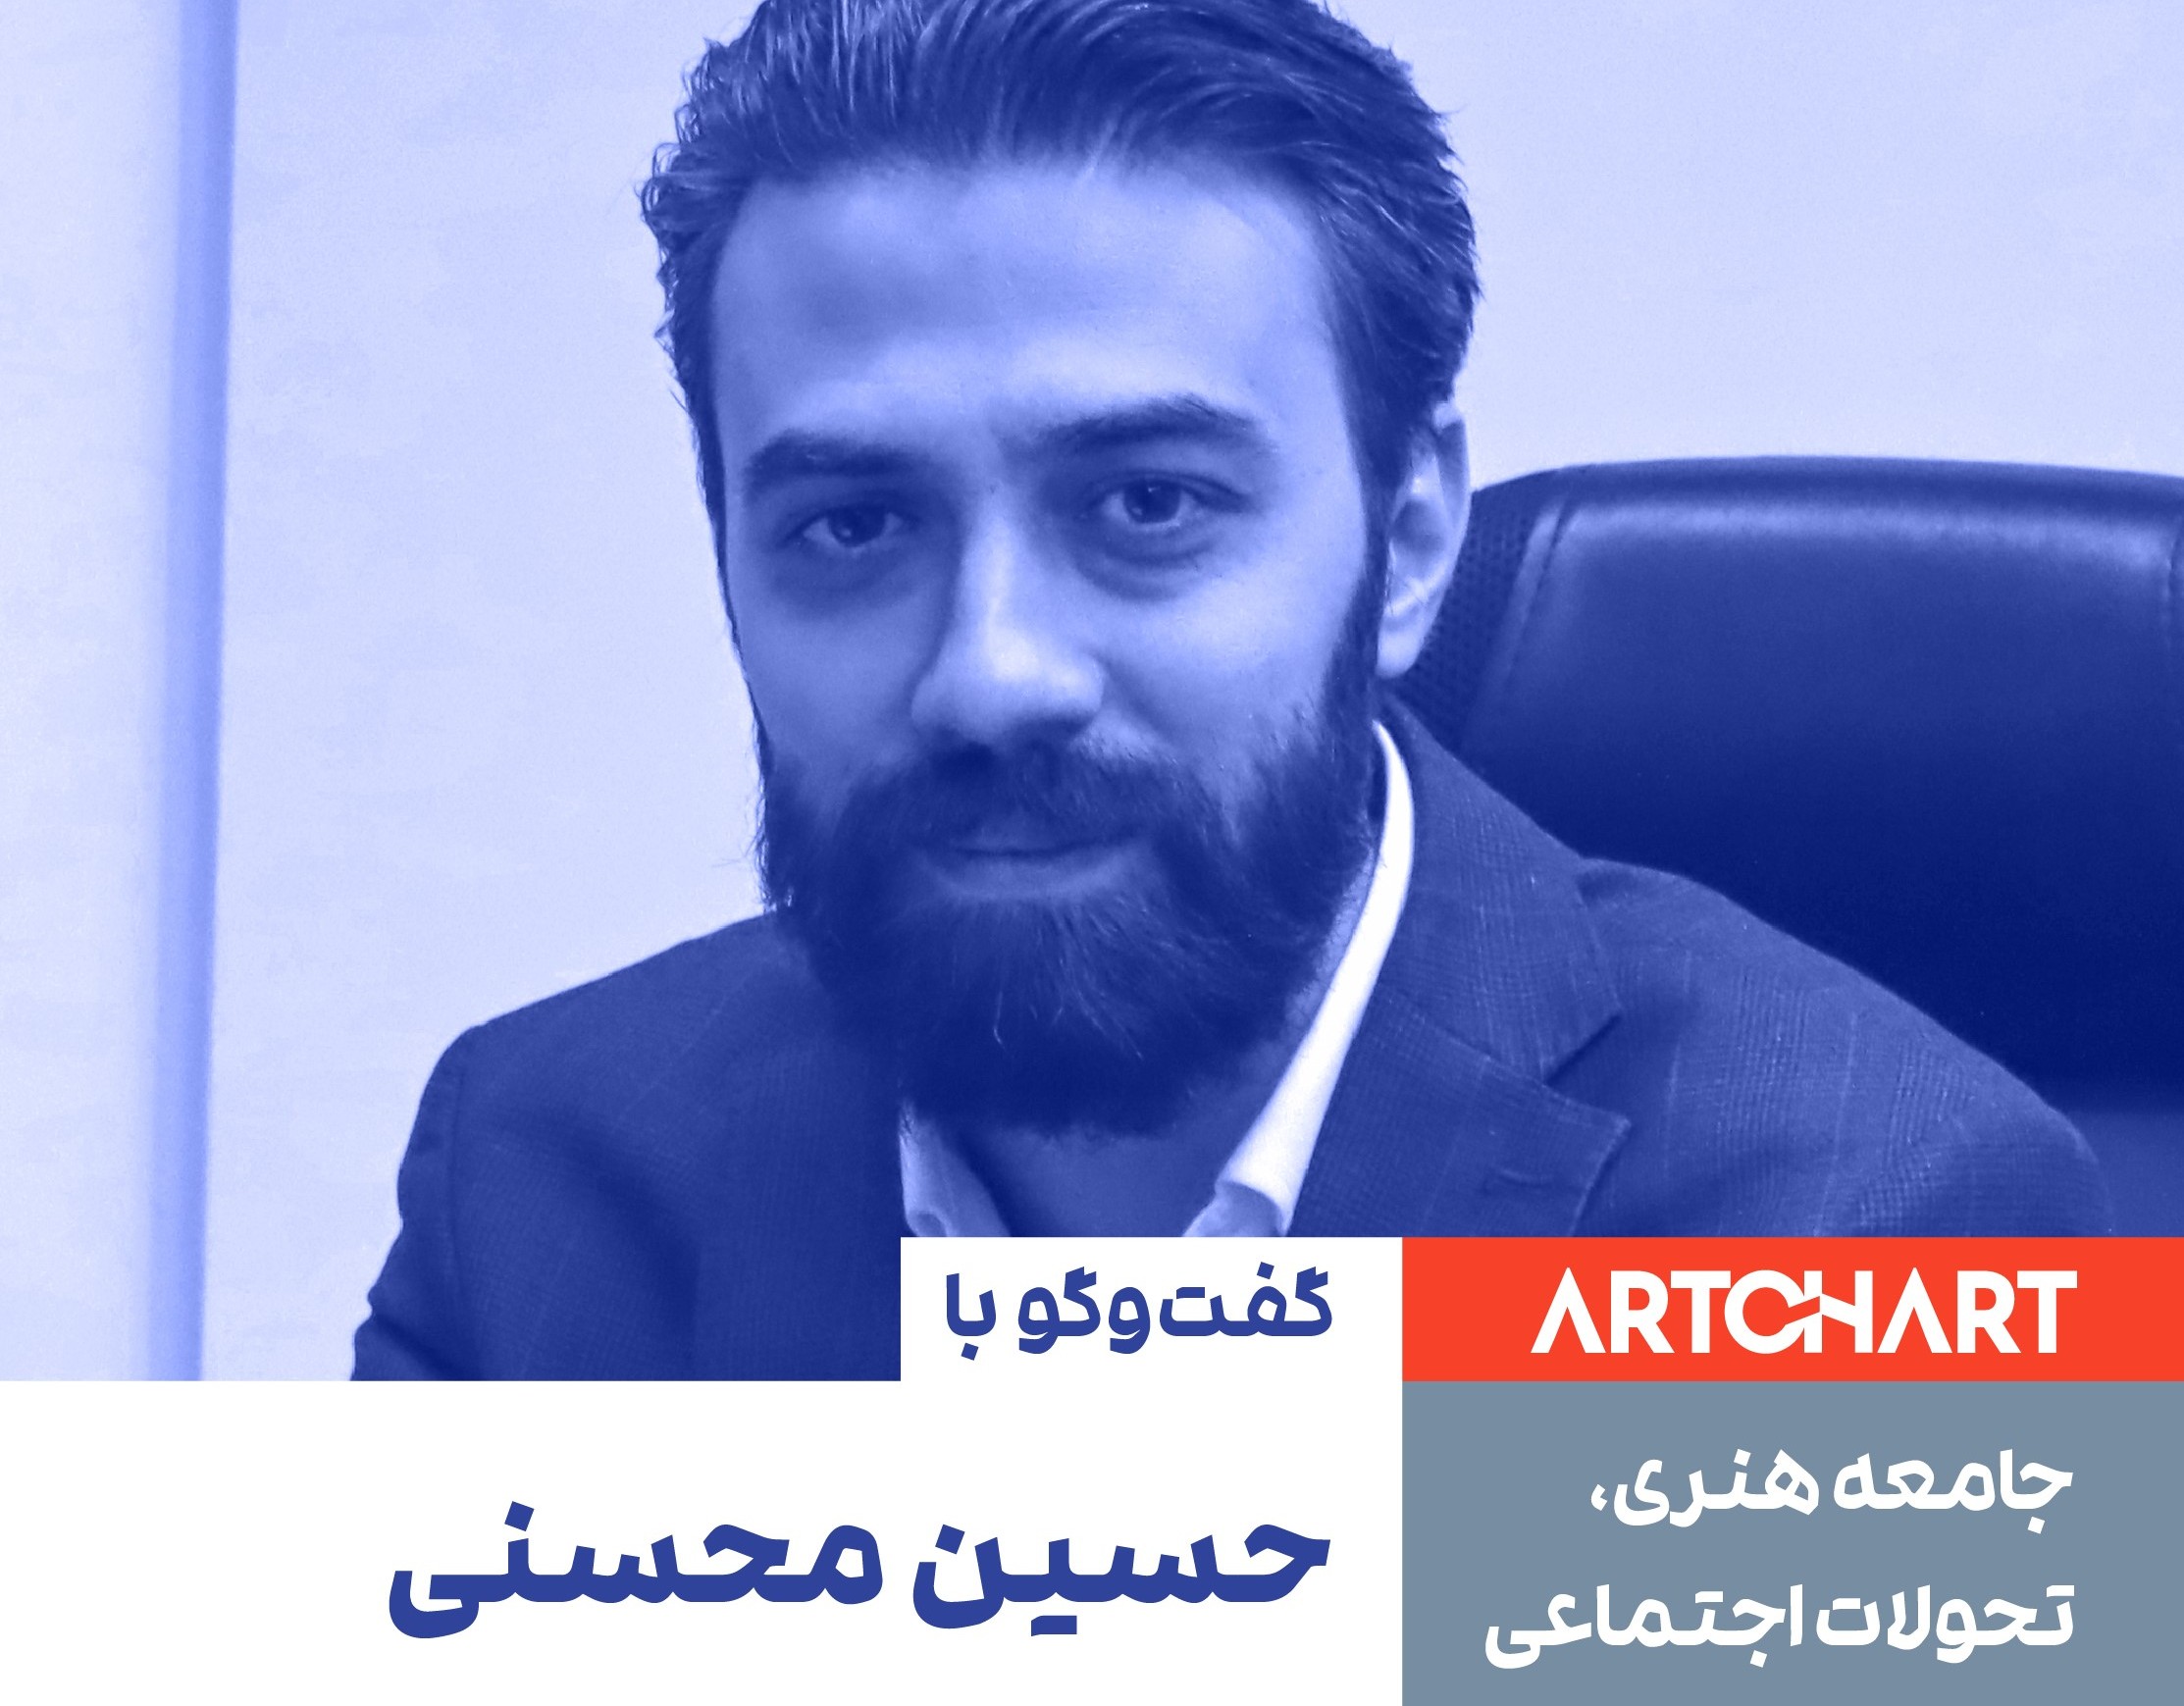 حسین محسنی در مصاحبه با آرتچارت